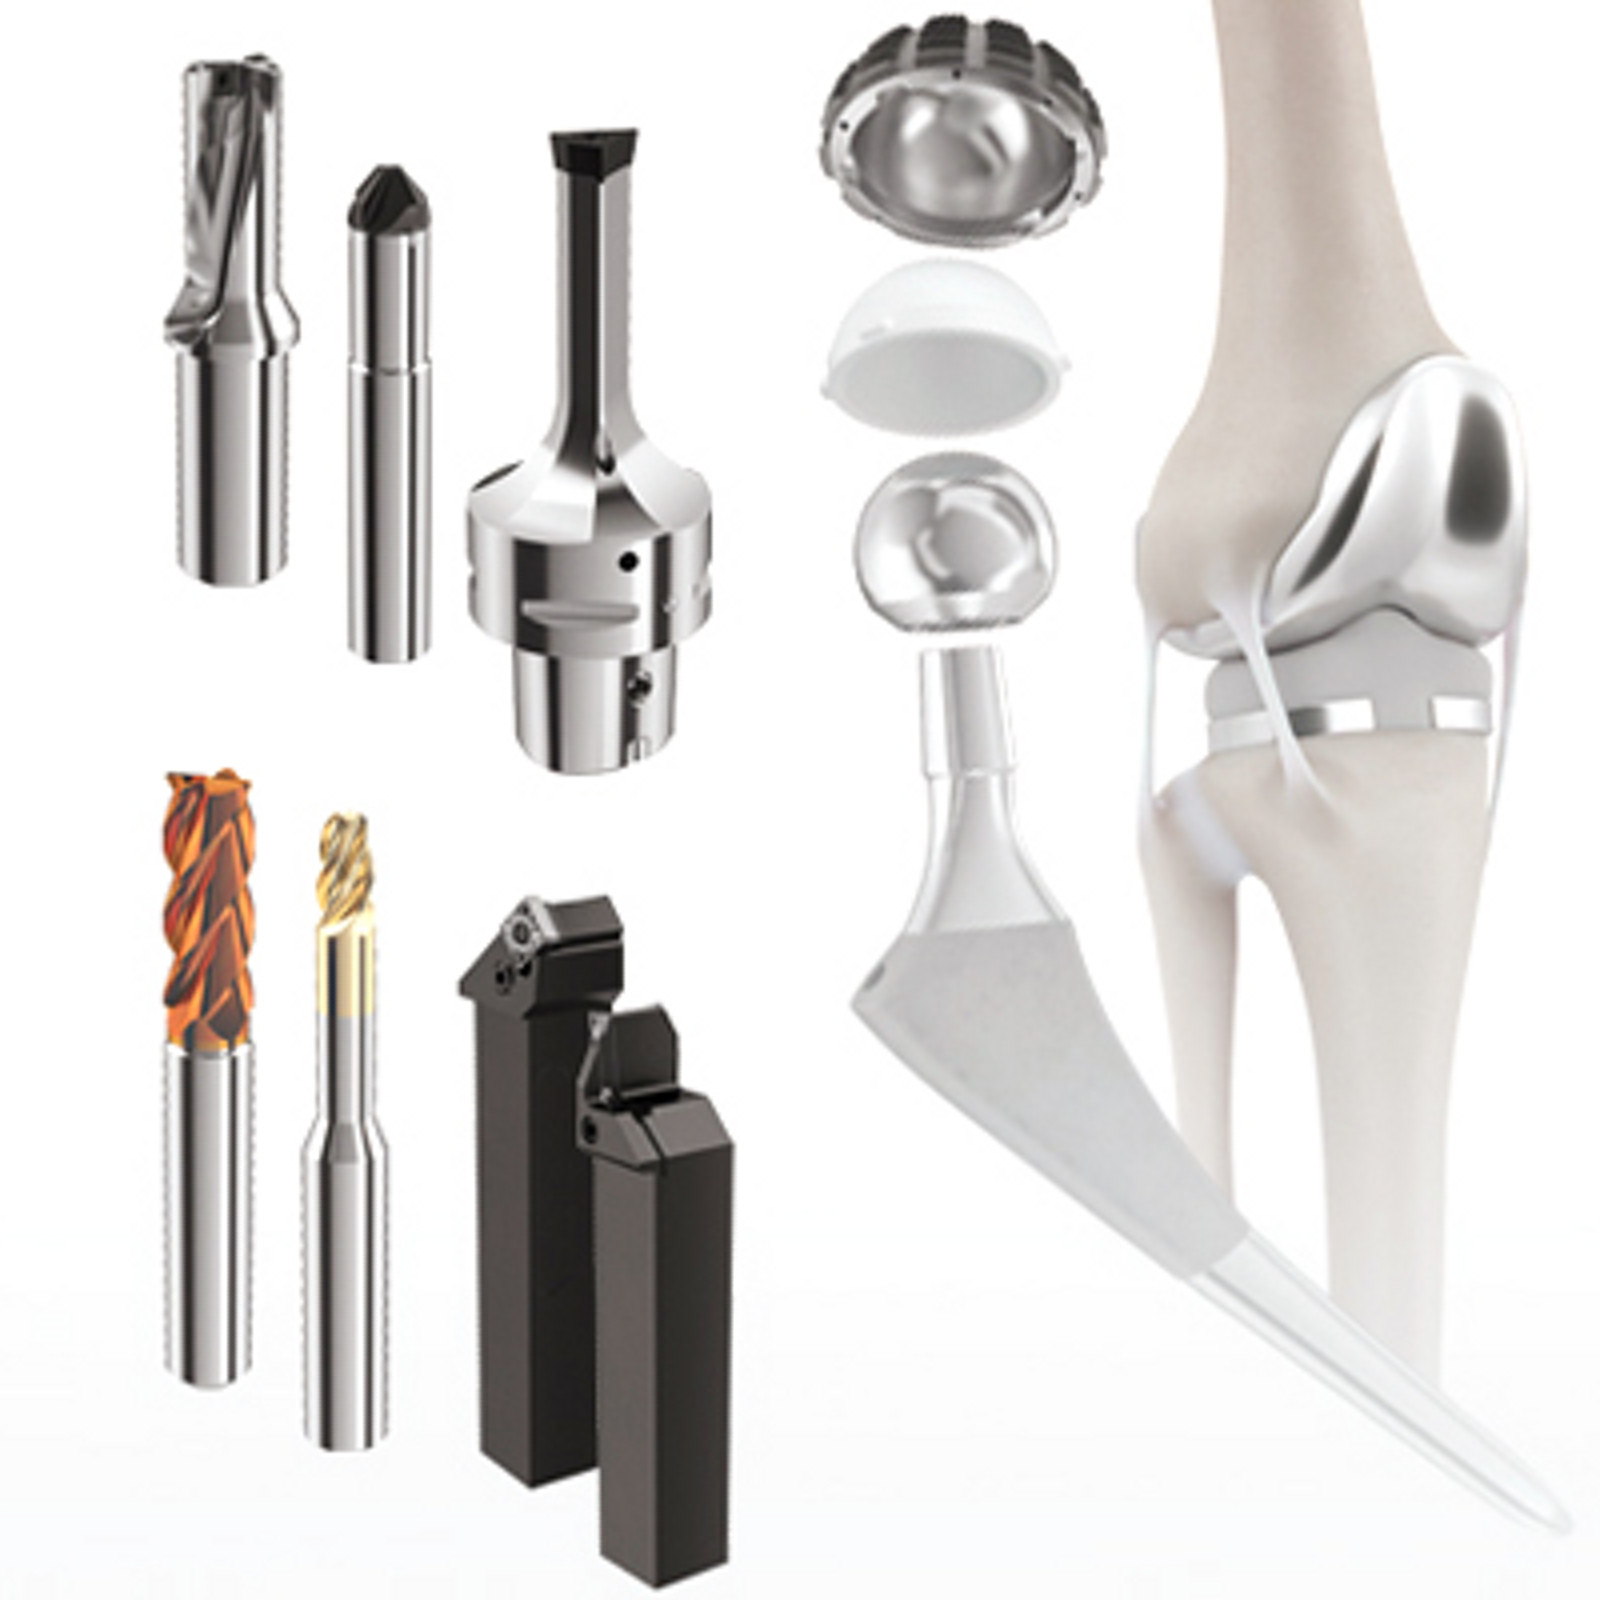 Cutting Tool Solutions pour les composants de technologies médicales